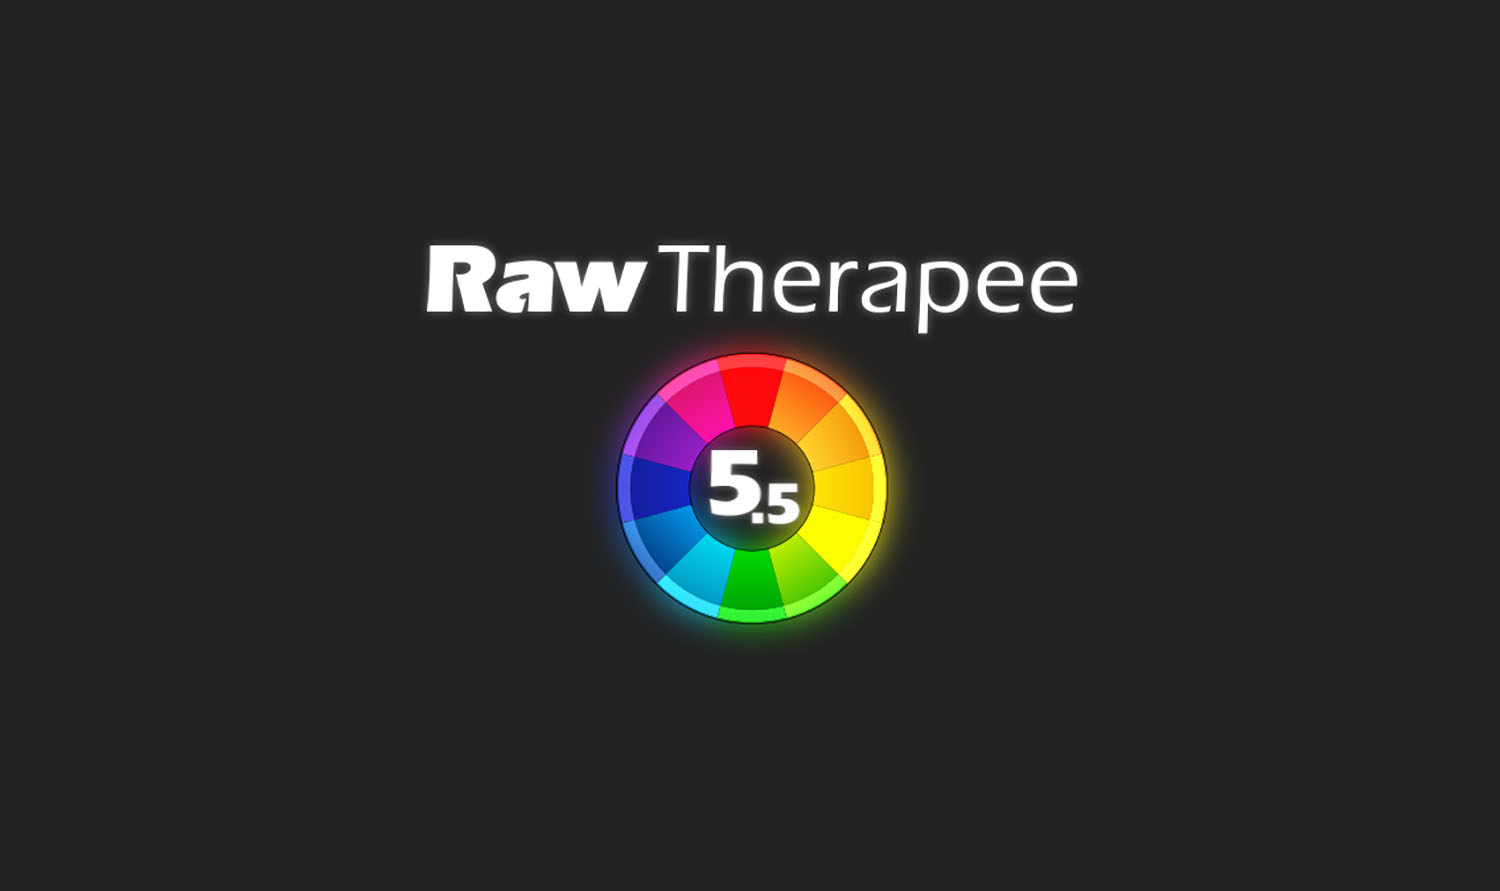 rawtherapee 5.0 user manual